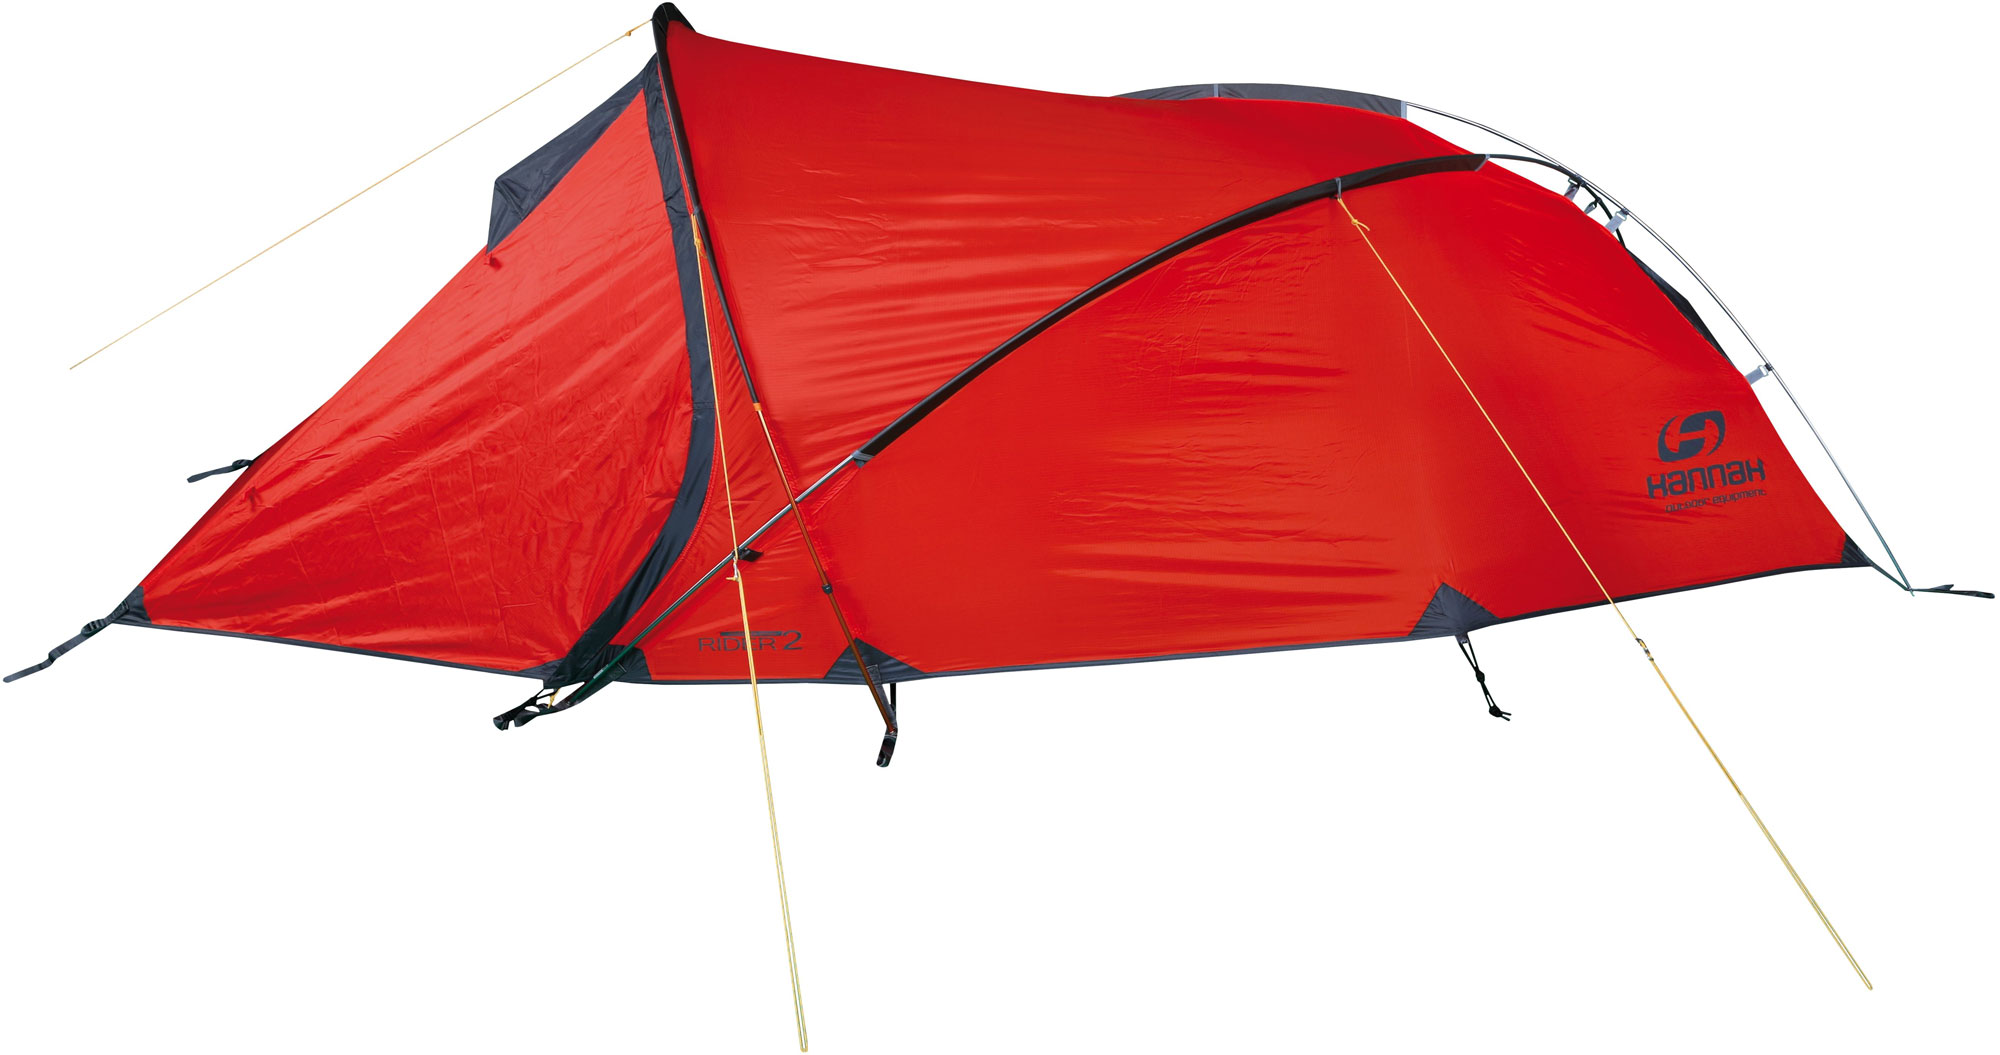 Outdoor tent